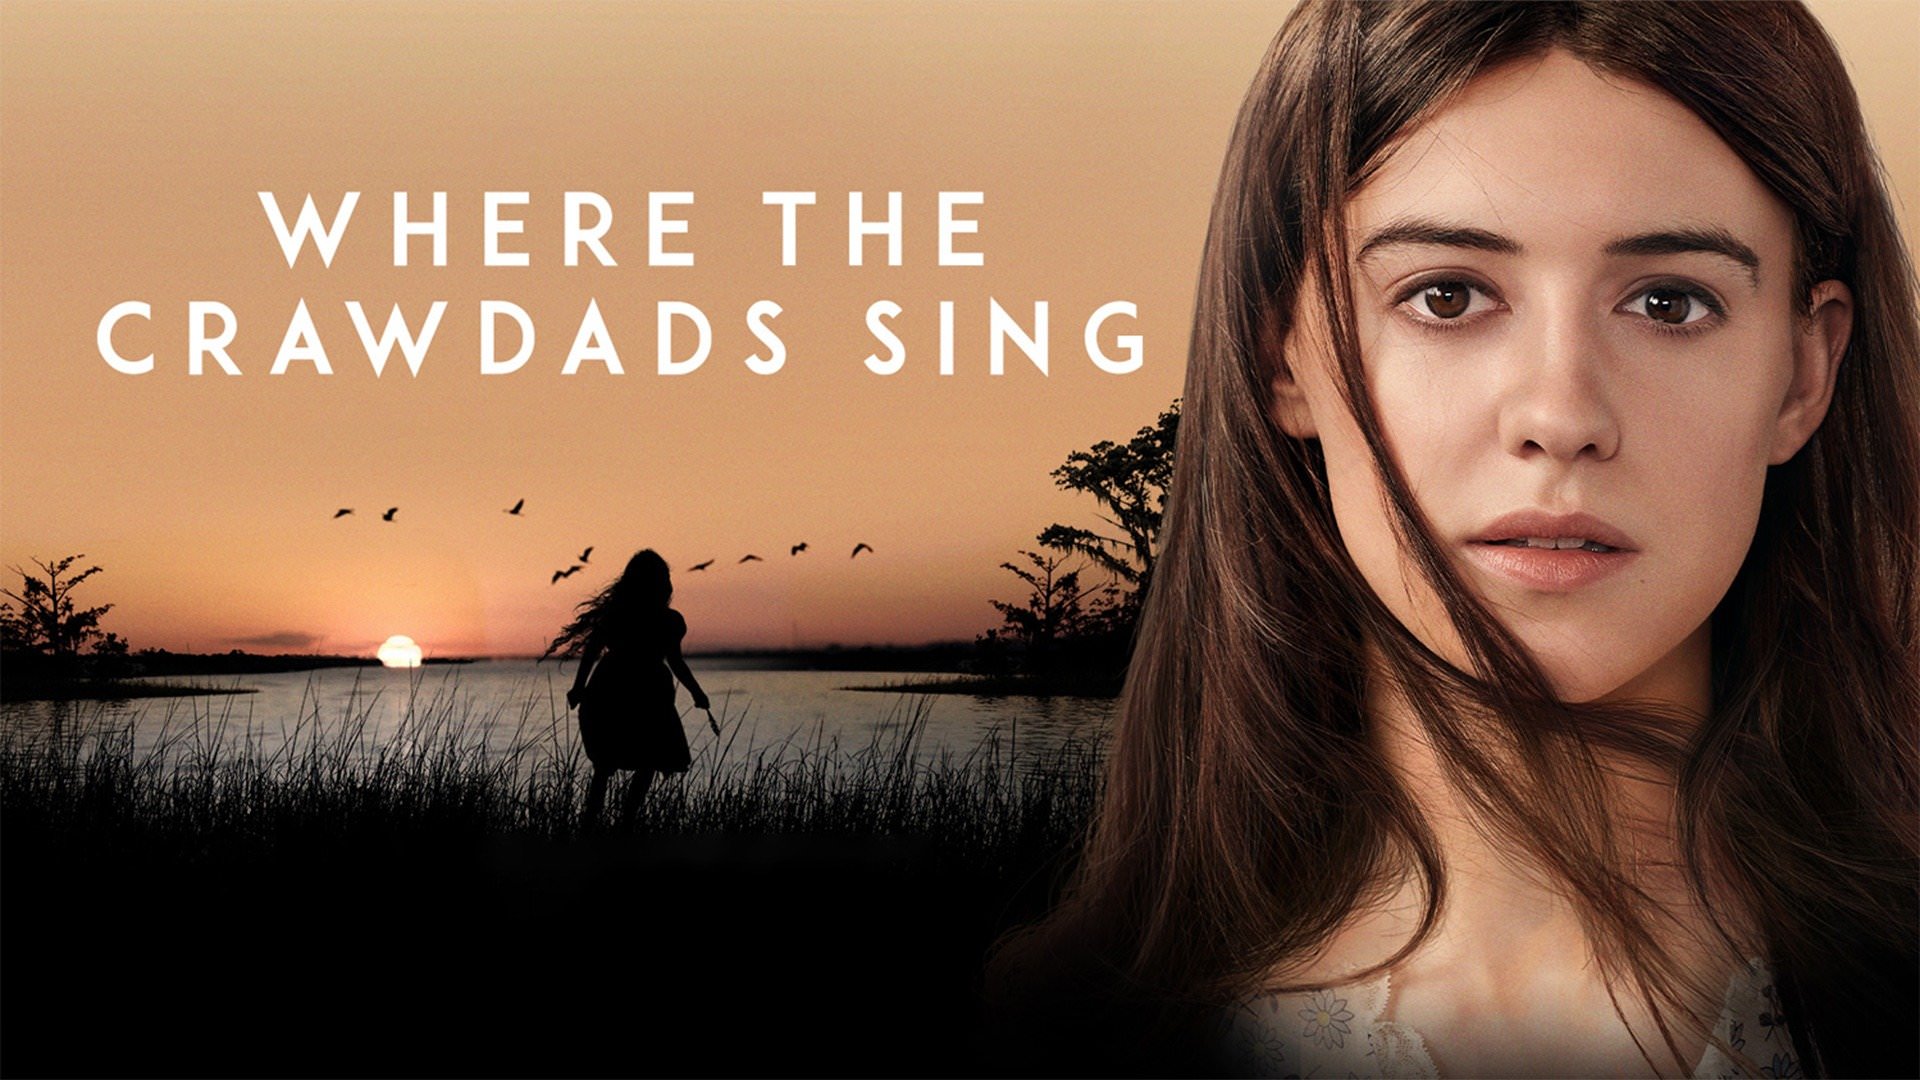 اعلام تاریخ انتشار بلوری فیلم Where the Crawdads Sing با بازی دیزی ادگار جونز